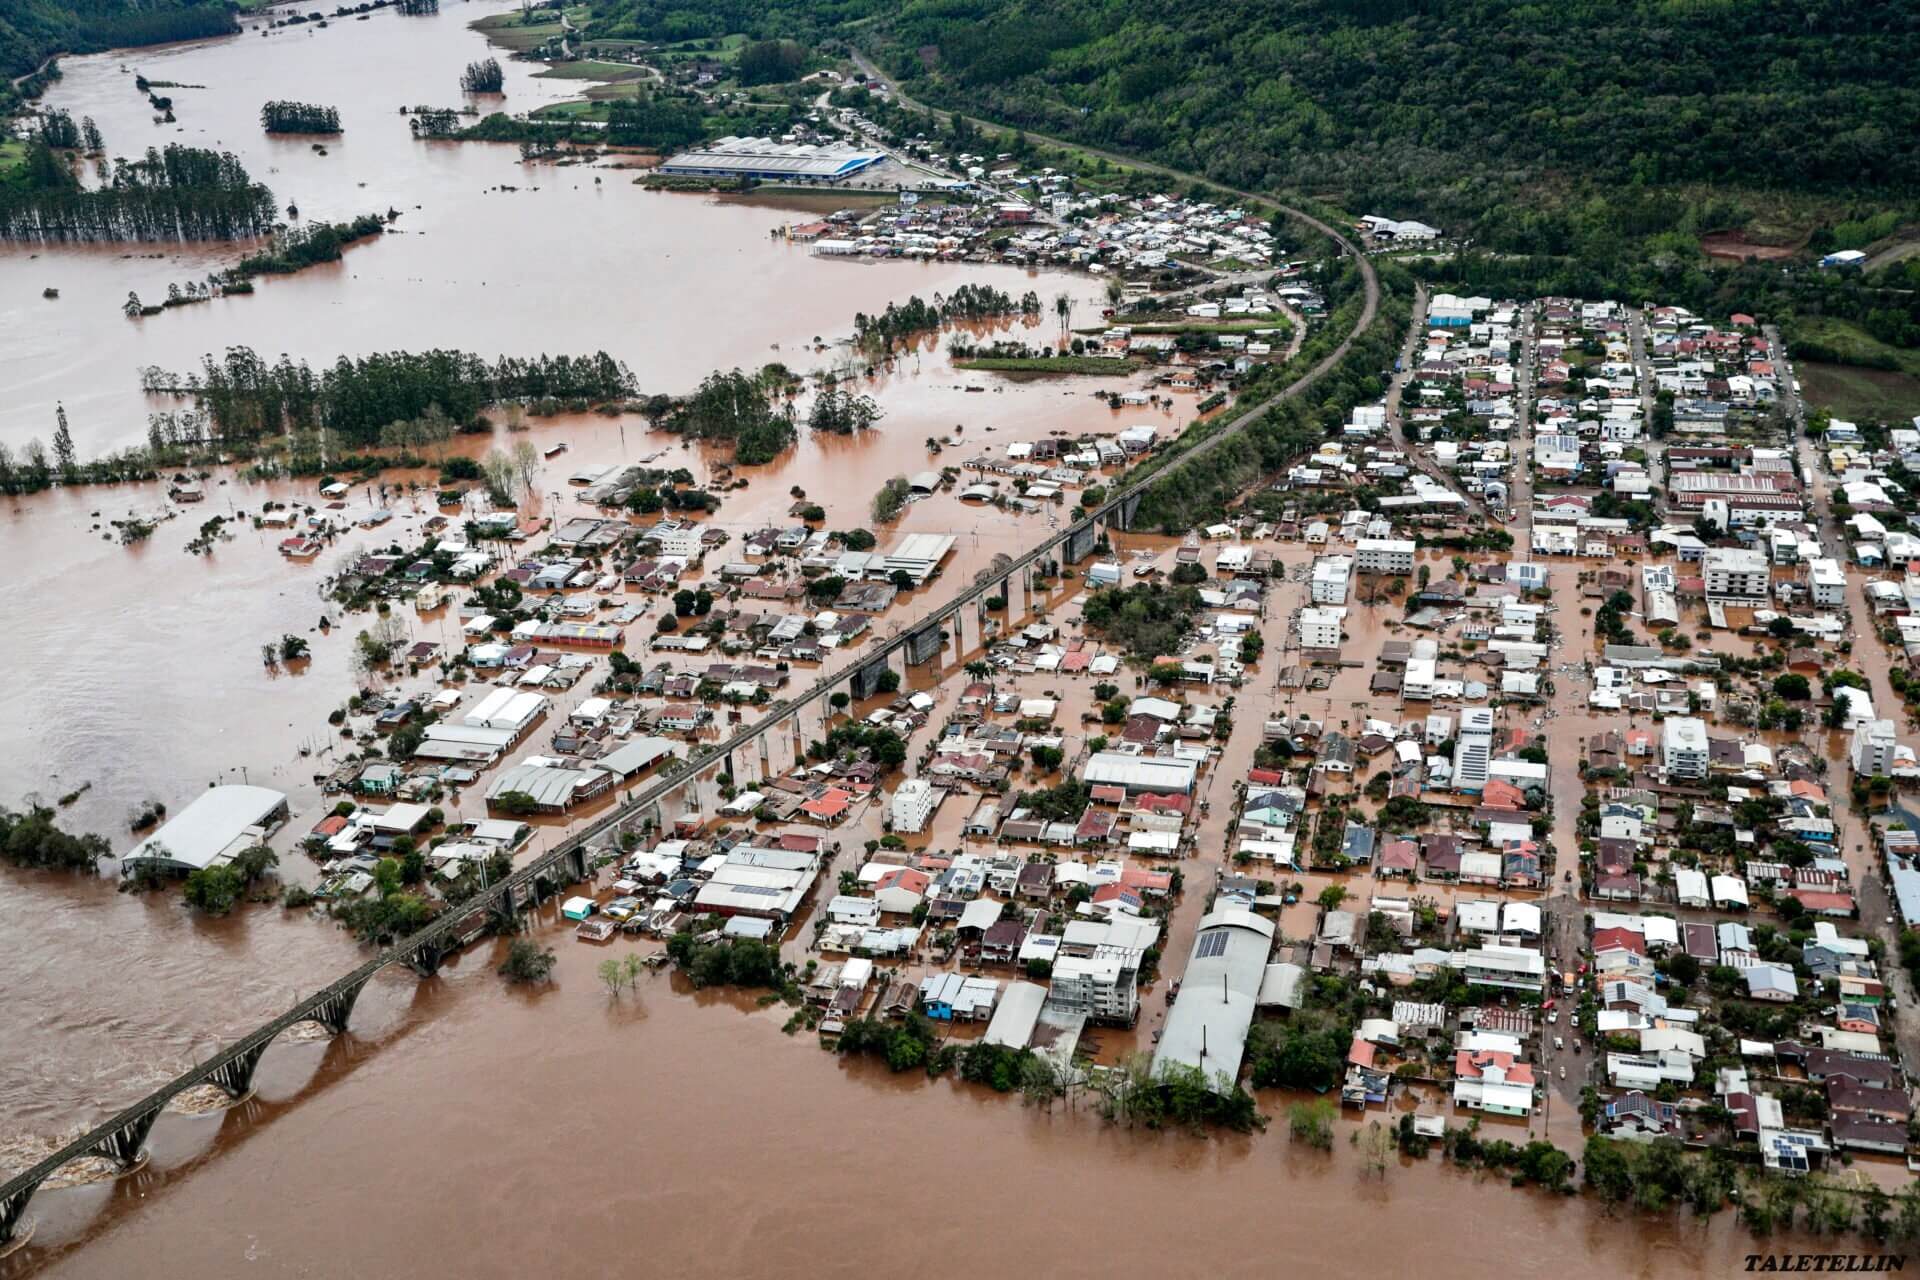 ฝนตกหนักในบราซิลคร่าชีวิตอย่างน้อย 8 ราย สูญหาย 21 ราย หน่วยป้องกันพลเรือนระบุ ฝนตกหนักในรัฐริโอกรันเดโดซุลทางตอนใต้ของบราซิล ส่งผลให้มี